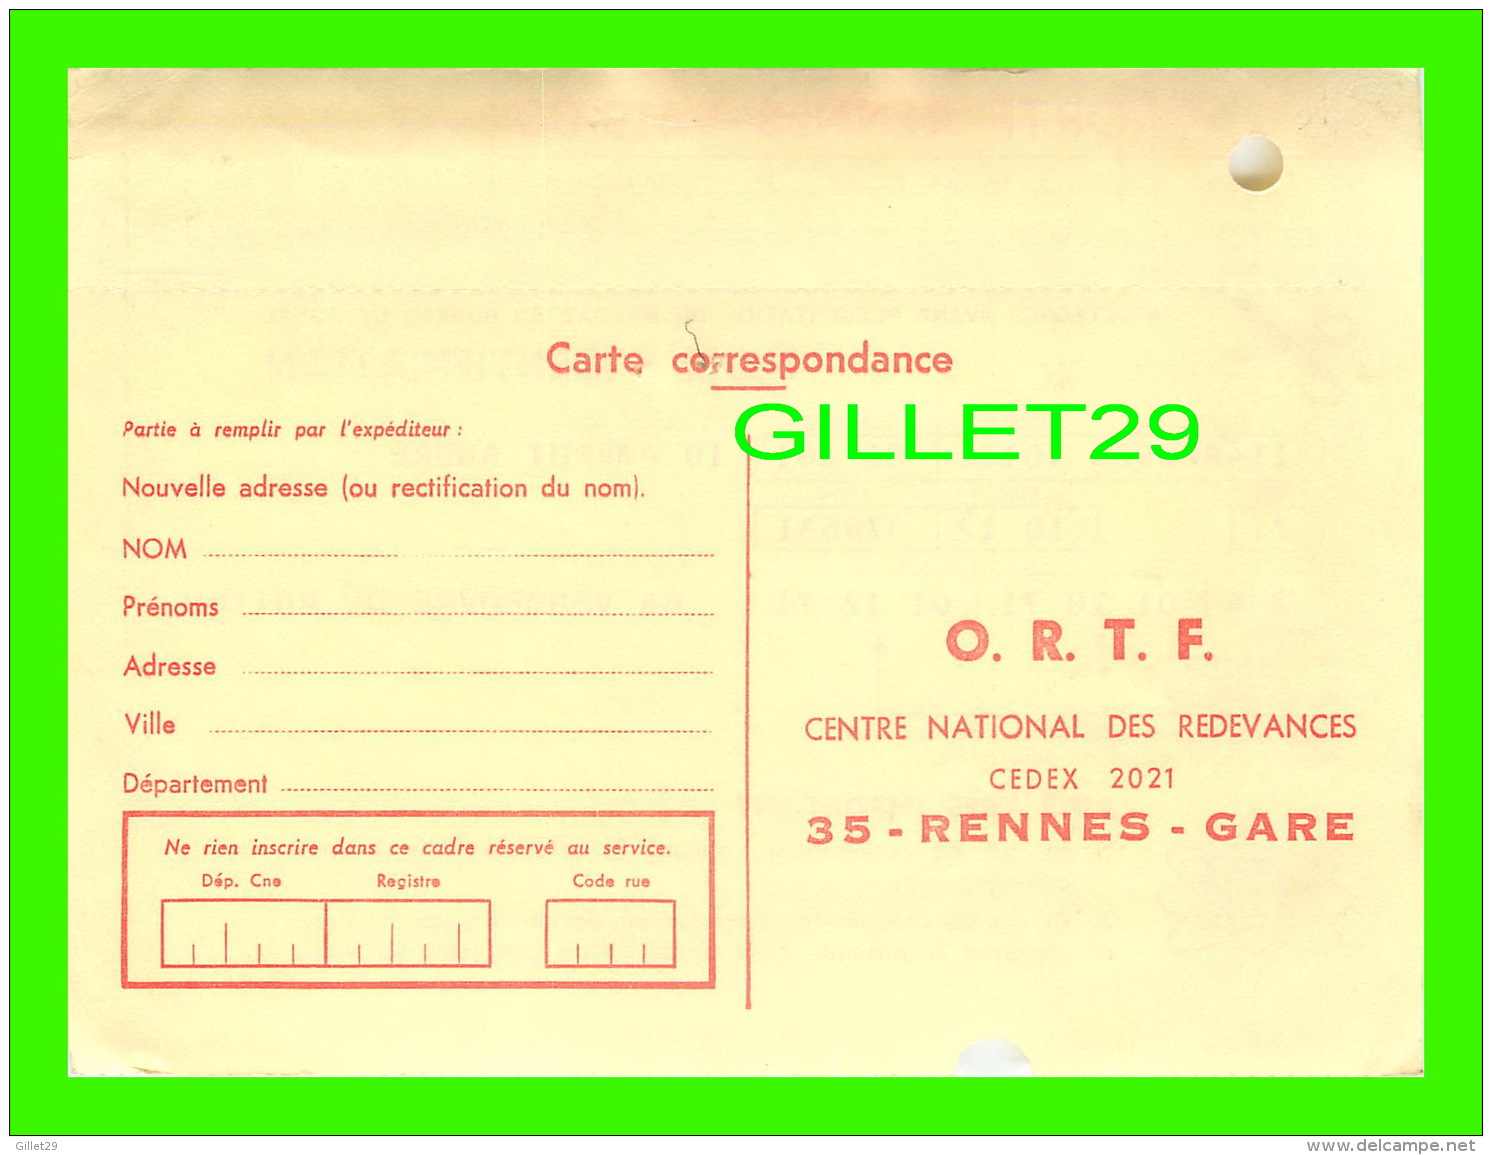 DOCUMENTS HISTORIQUES - O.R.T.F., CENTRE NATIONAL DES REDEVANCES, RENNES-GARE (35) - FICHE D'IDENTIFICATION, 1974 - - Documents Historiques